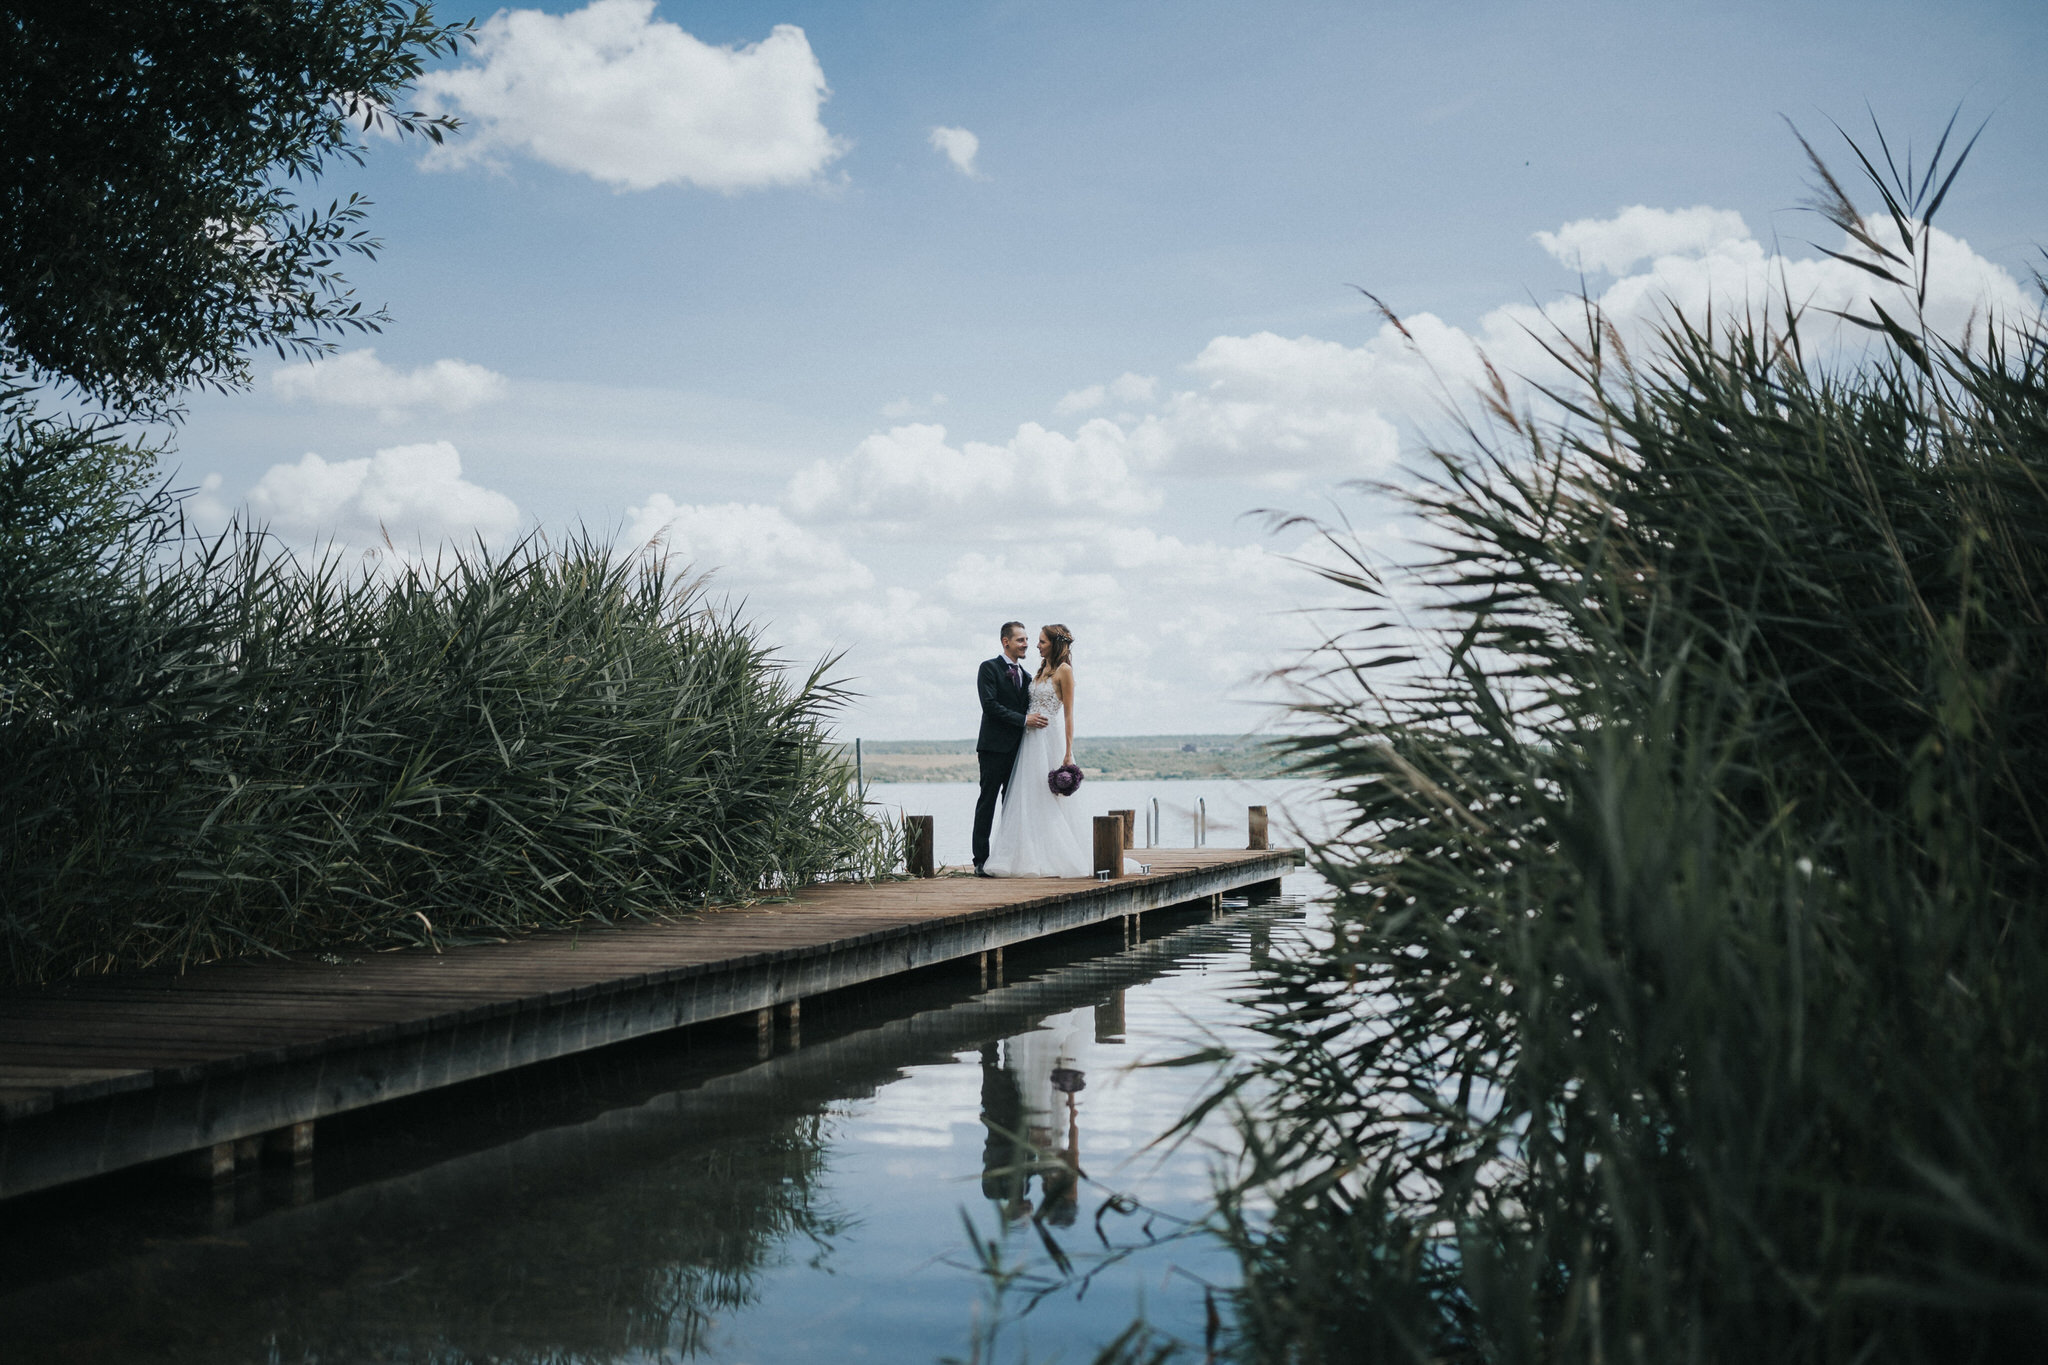 Idyllisches Brautpaarfotoshooting am Seeufer – Die Liebe des Paares wird in romantischen Bildern eingefangen, während sie entlang des Ufers spazieren und den Zauber des Augenblicks erleben.